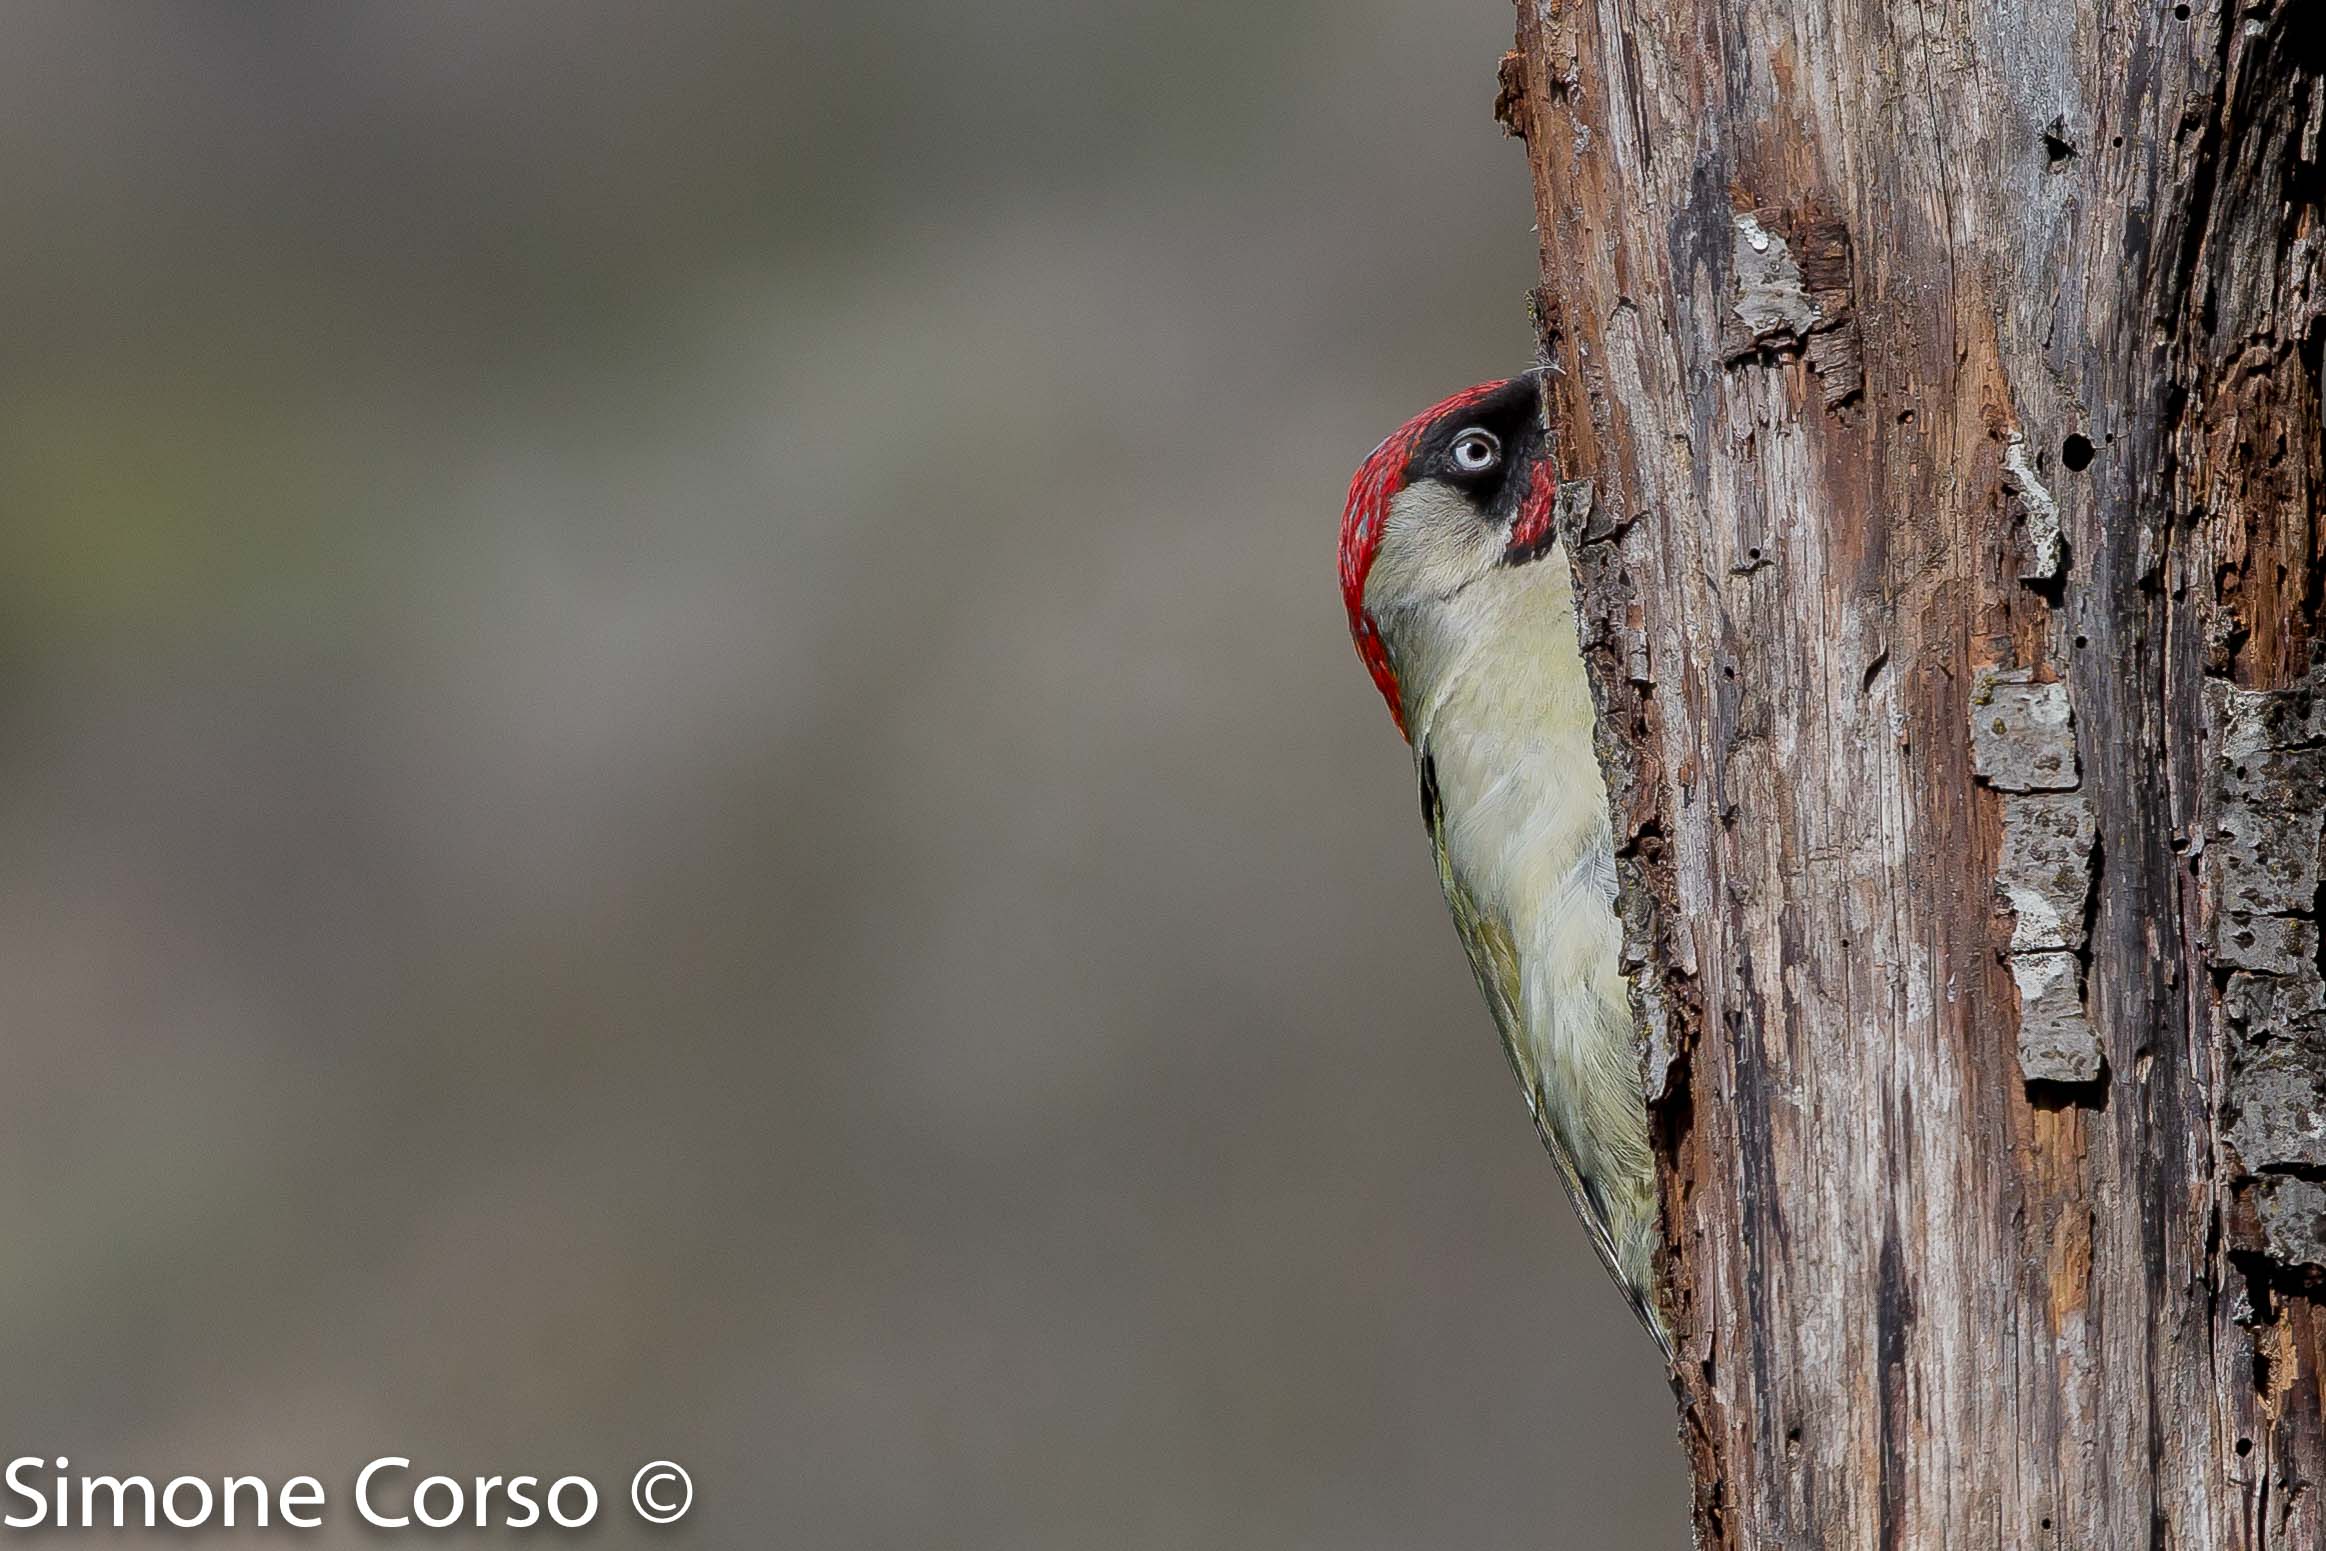 Green woodpecker...